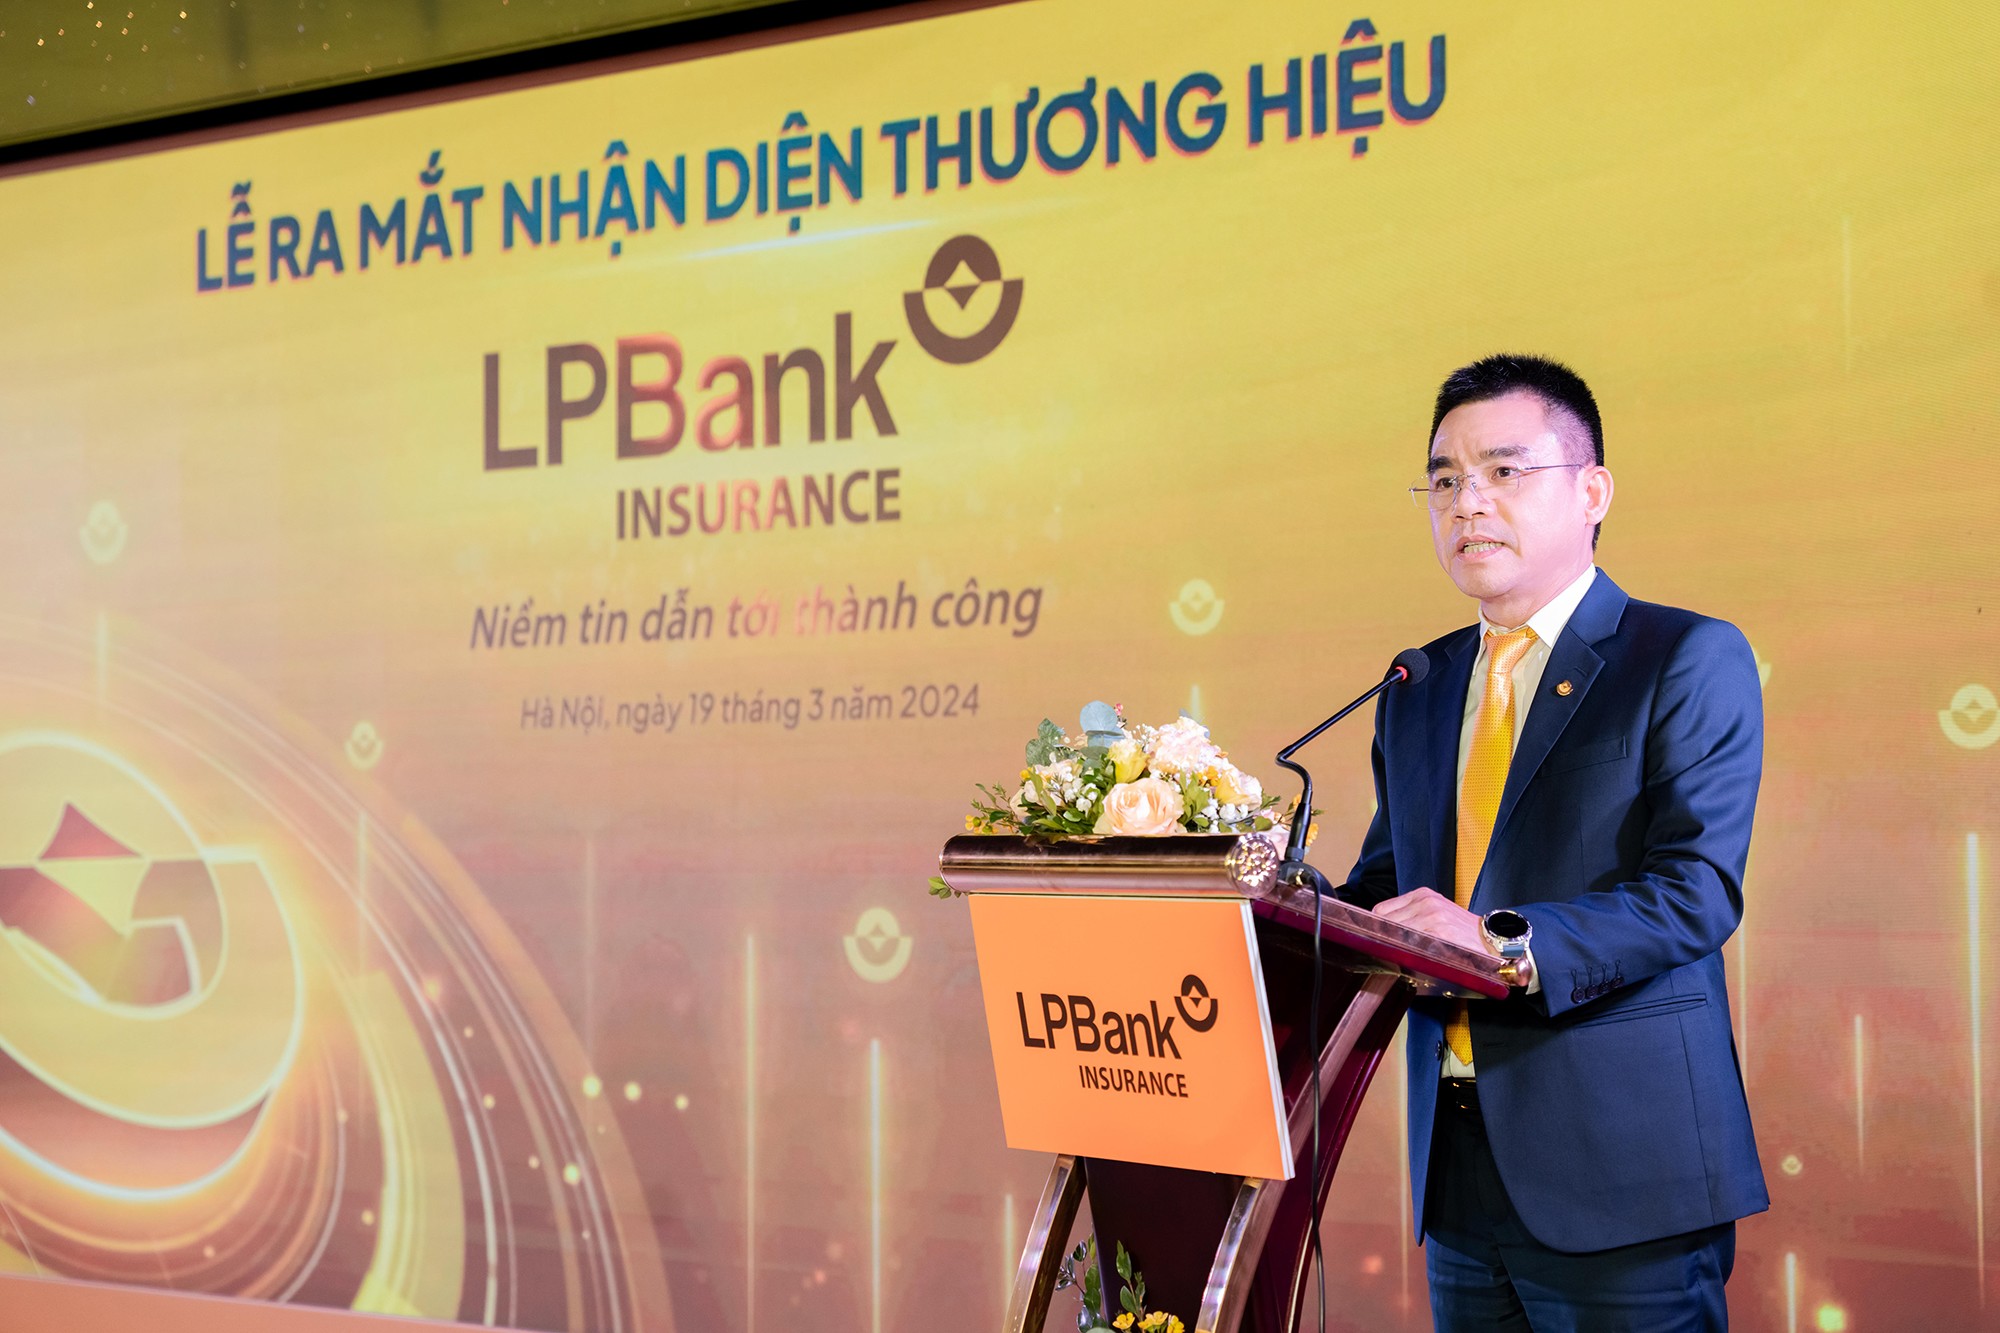 Ông Hồ Nam Tiến - Phó Chủ tịch HĐQT kiêm Tổng Giám đốc LPBank phát biểu tại sự kiện.